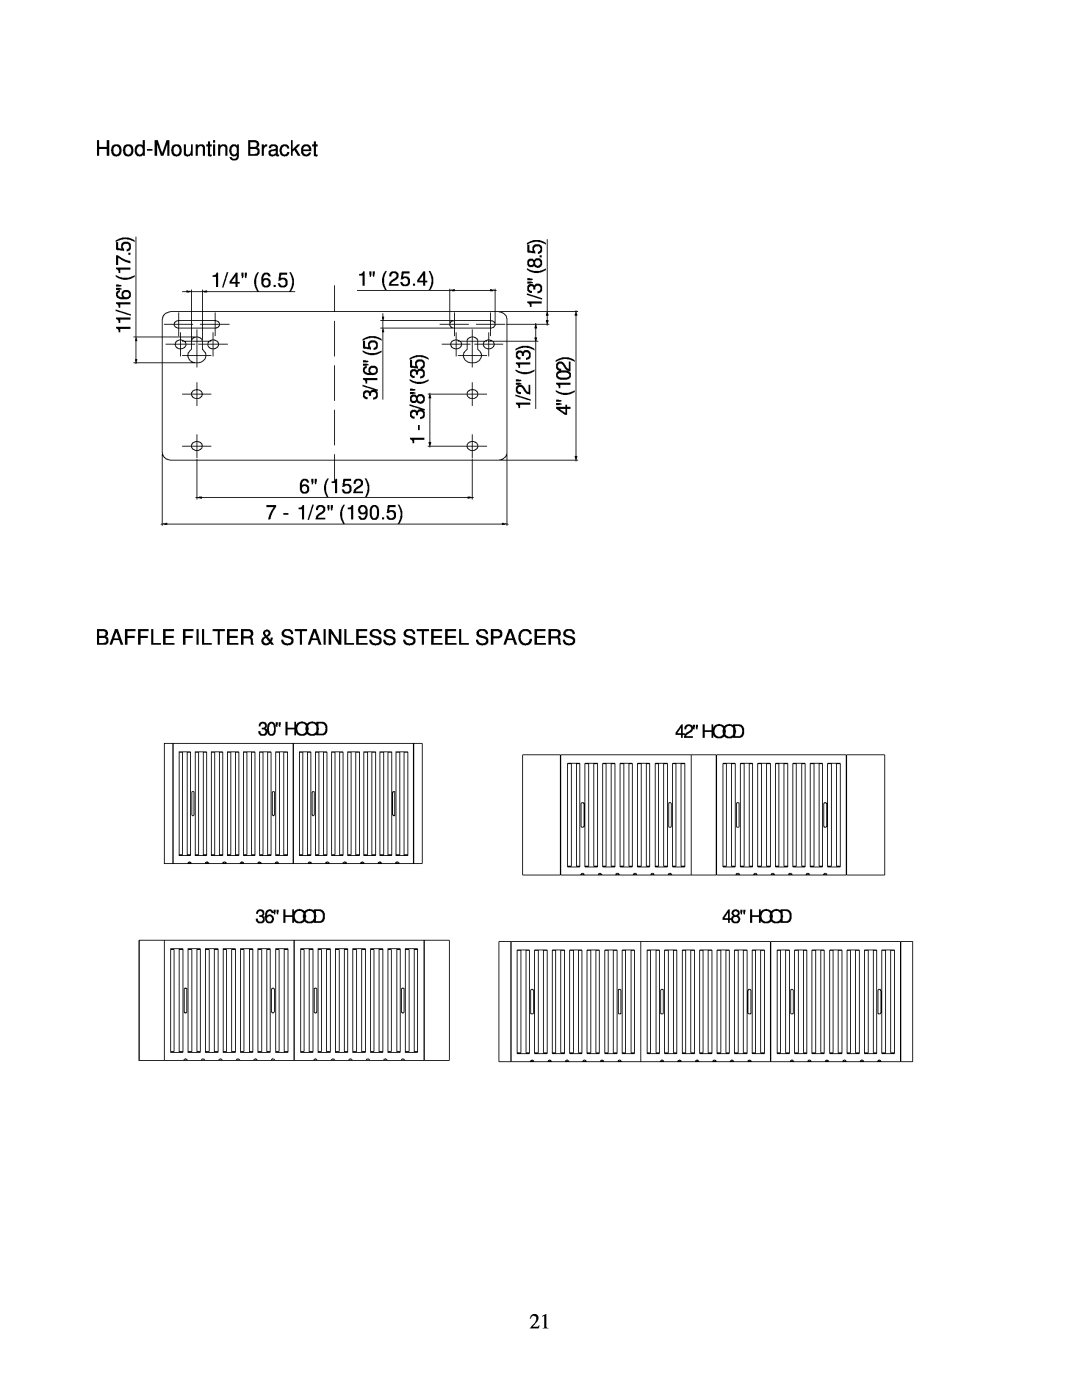 Kobe Range Hoods CH0136SQB (36") Hood-Mounting Bracket, Baffle Filter & Stainless Steel Spacers, 11/16, 3/16, 7 - 1/2 